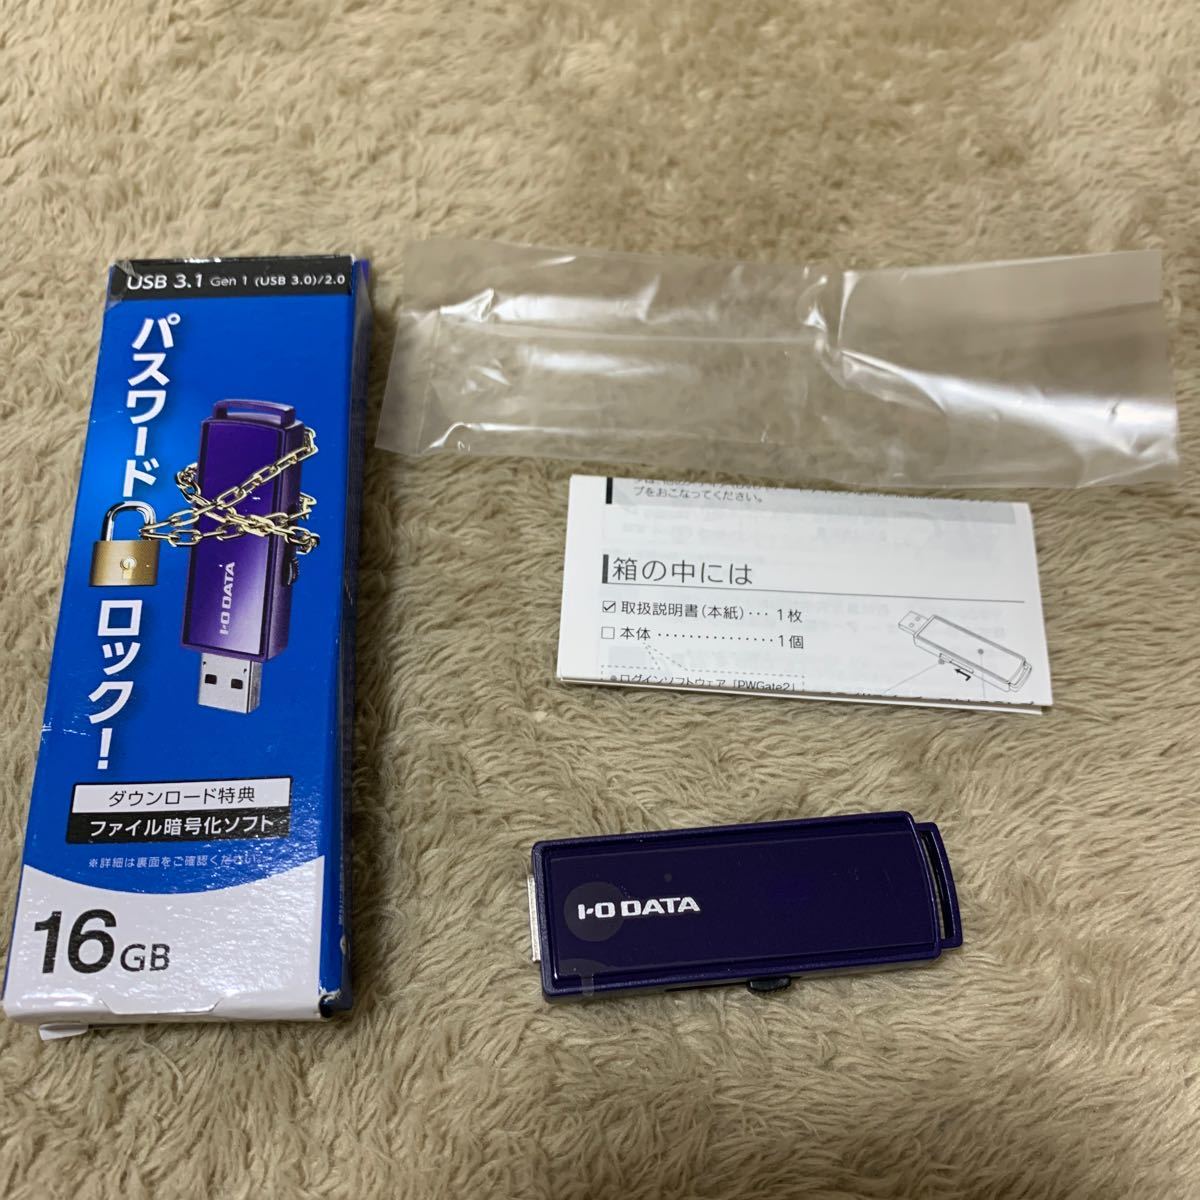 601t2439☆ アイ・オー・データ USB 3.1 Gen 1(USB 3.0)対応 セキュリティUSBメモリー 16GB 日本メーカー EU3-PW/16GR